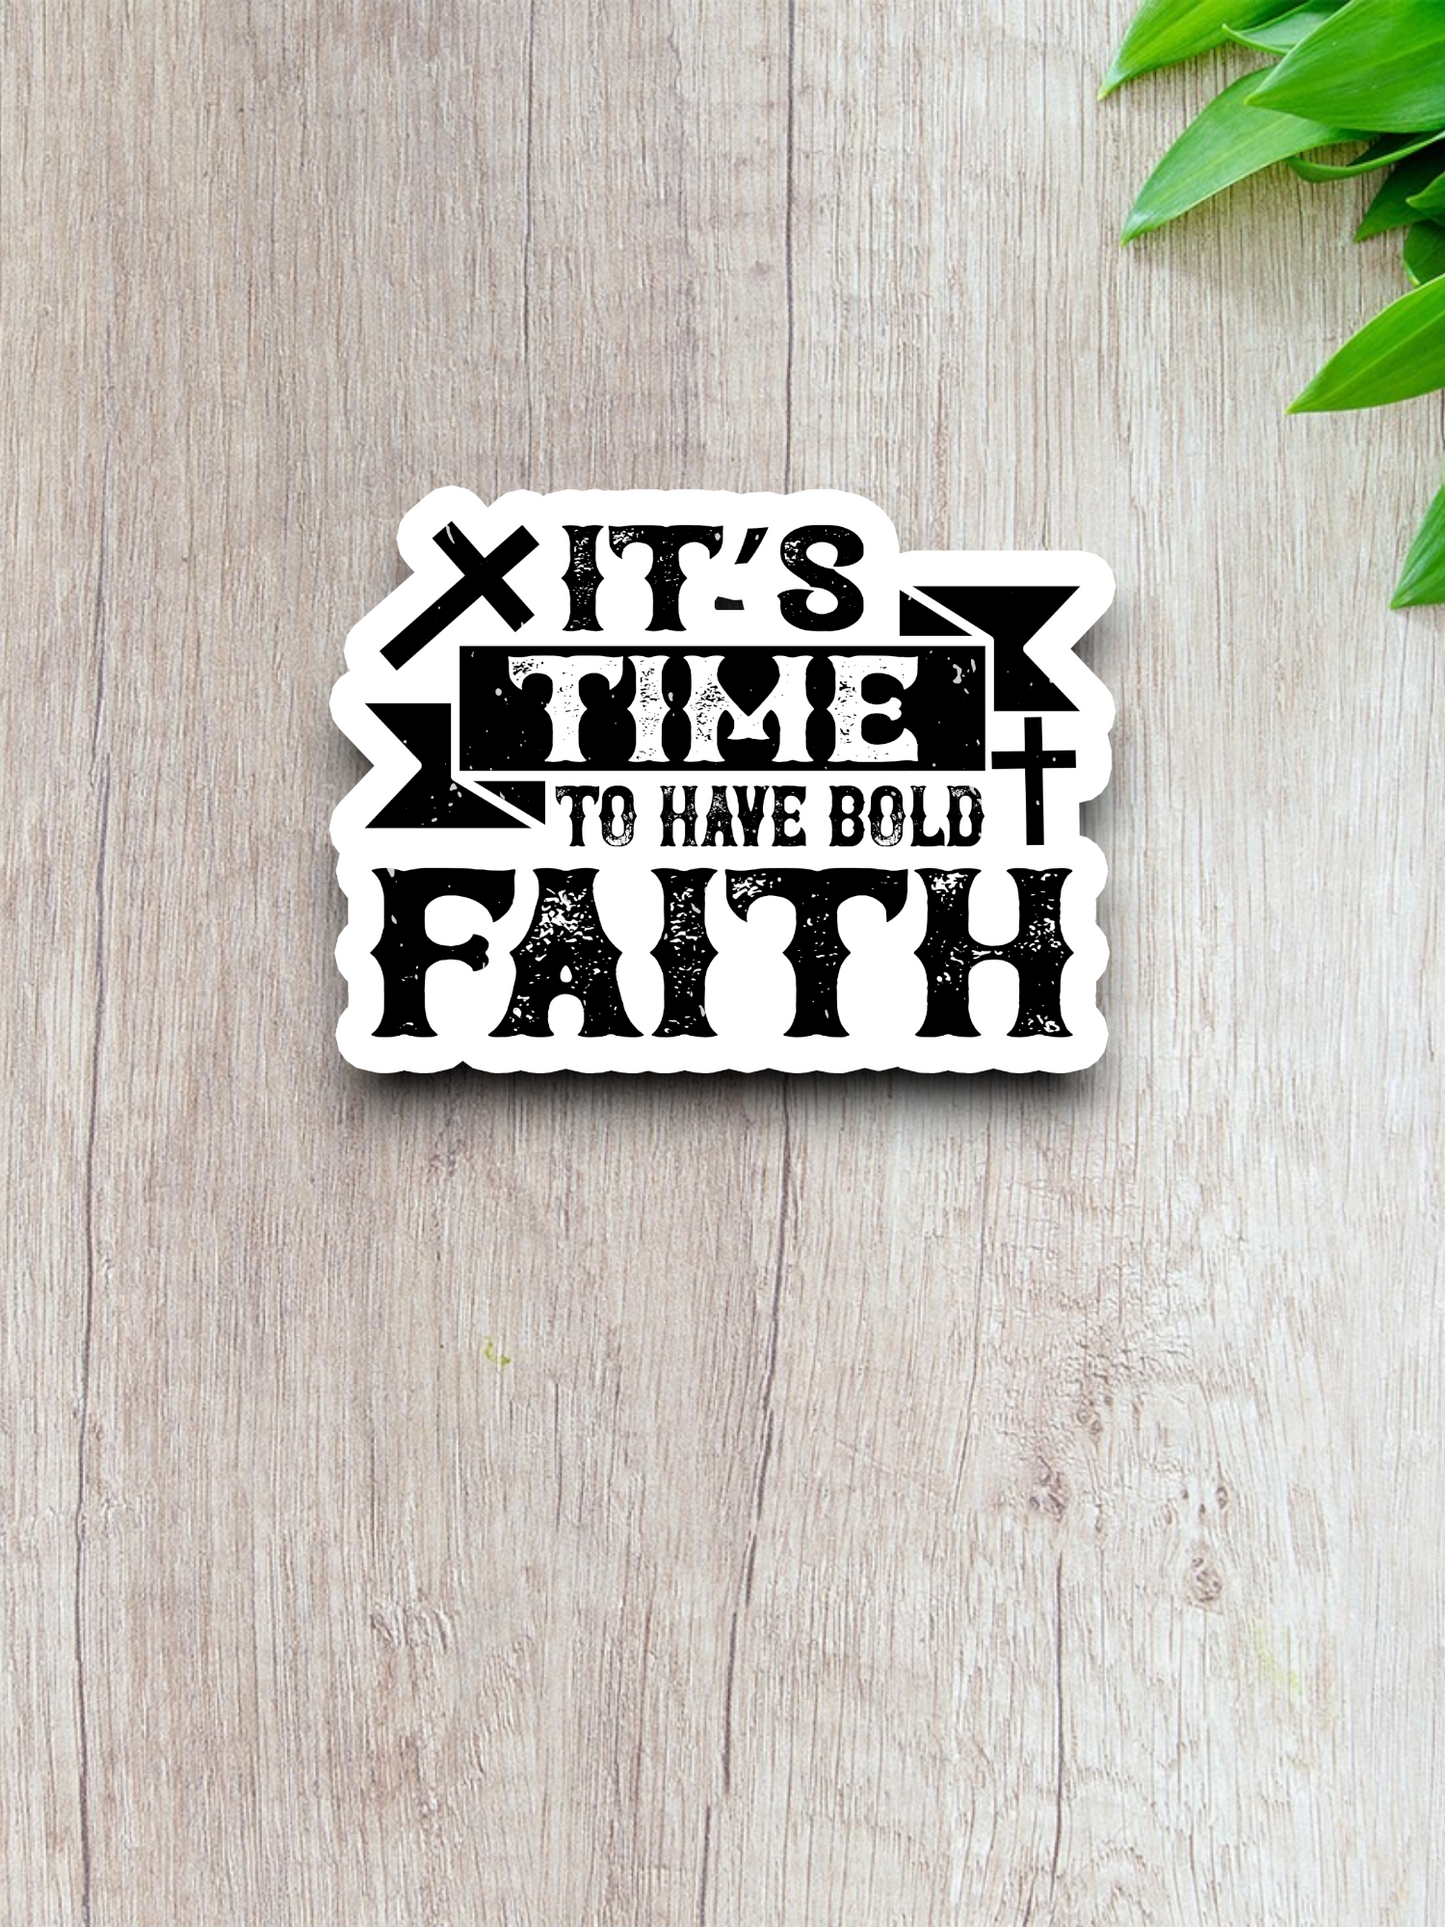 It's Time to Have Bold Faith 02 - Faith Sticker